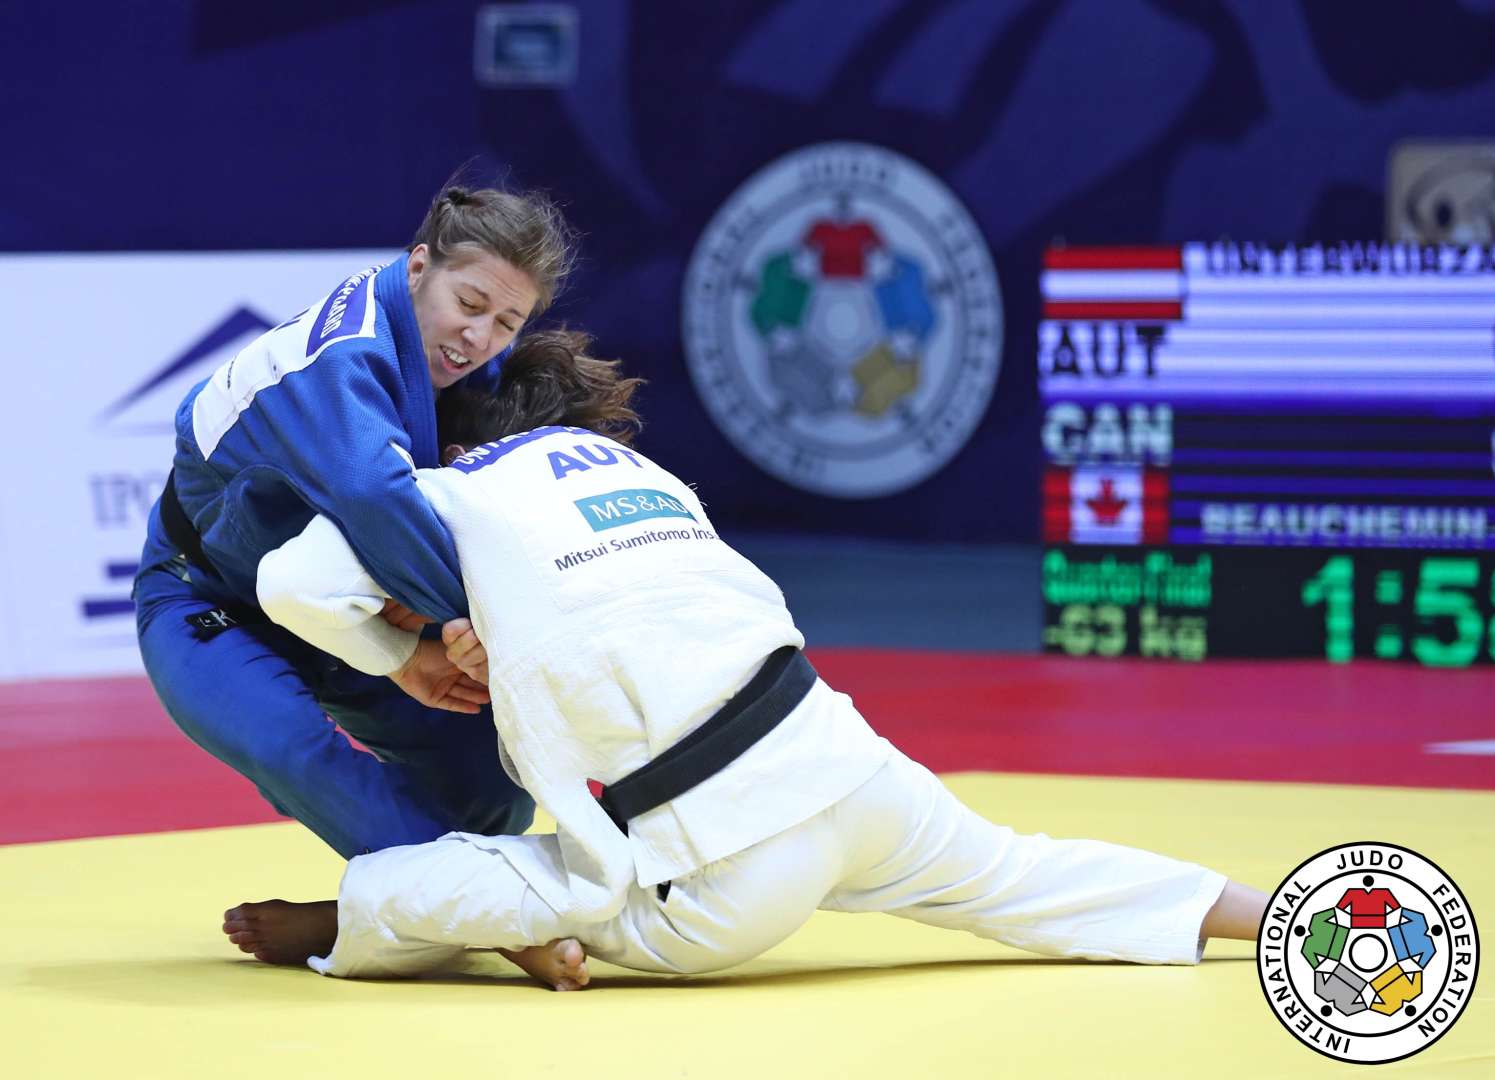 La judoka Catherine Beauchemin-Pinard remporte la médaille de bronze aux Jeux olympiques de Tokyo